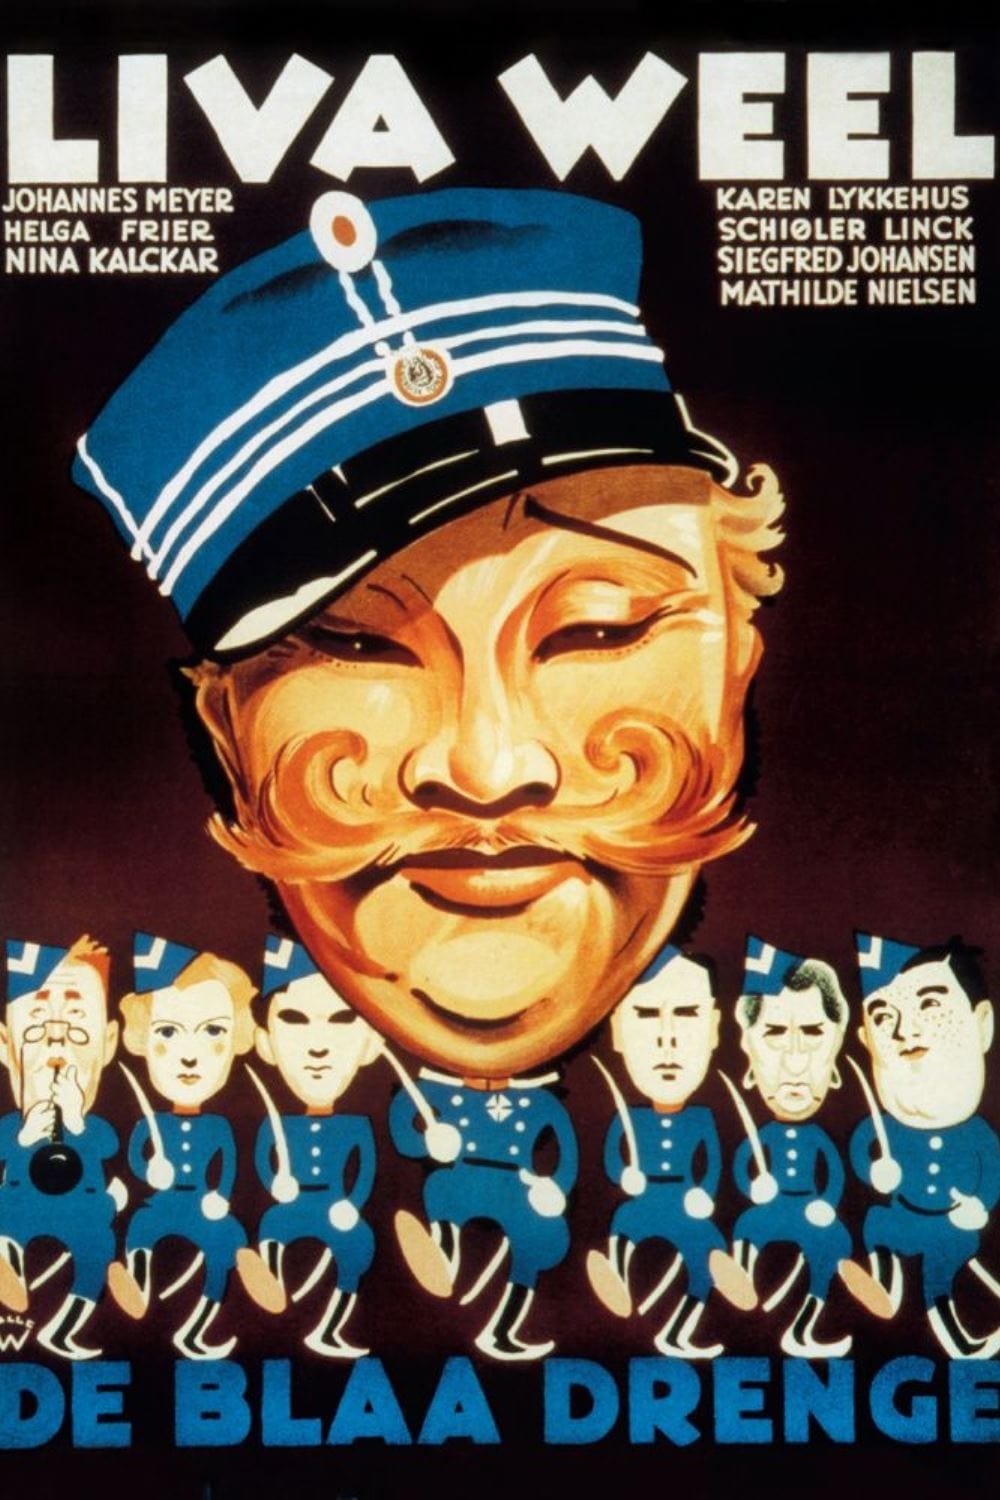 De blaa drenge (1933)